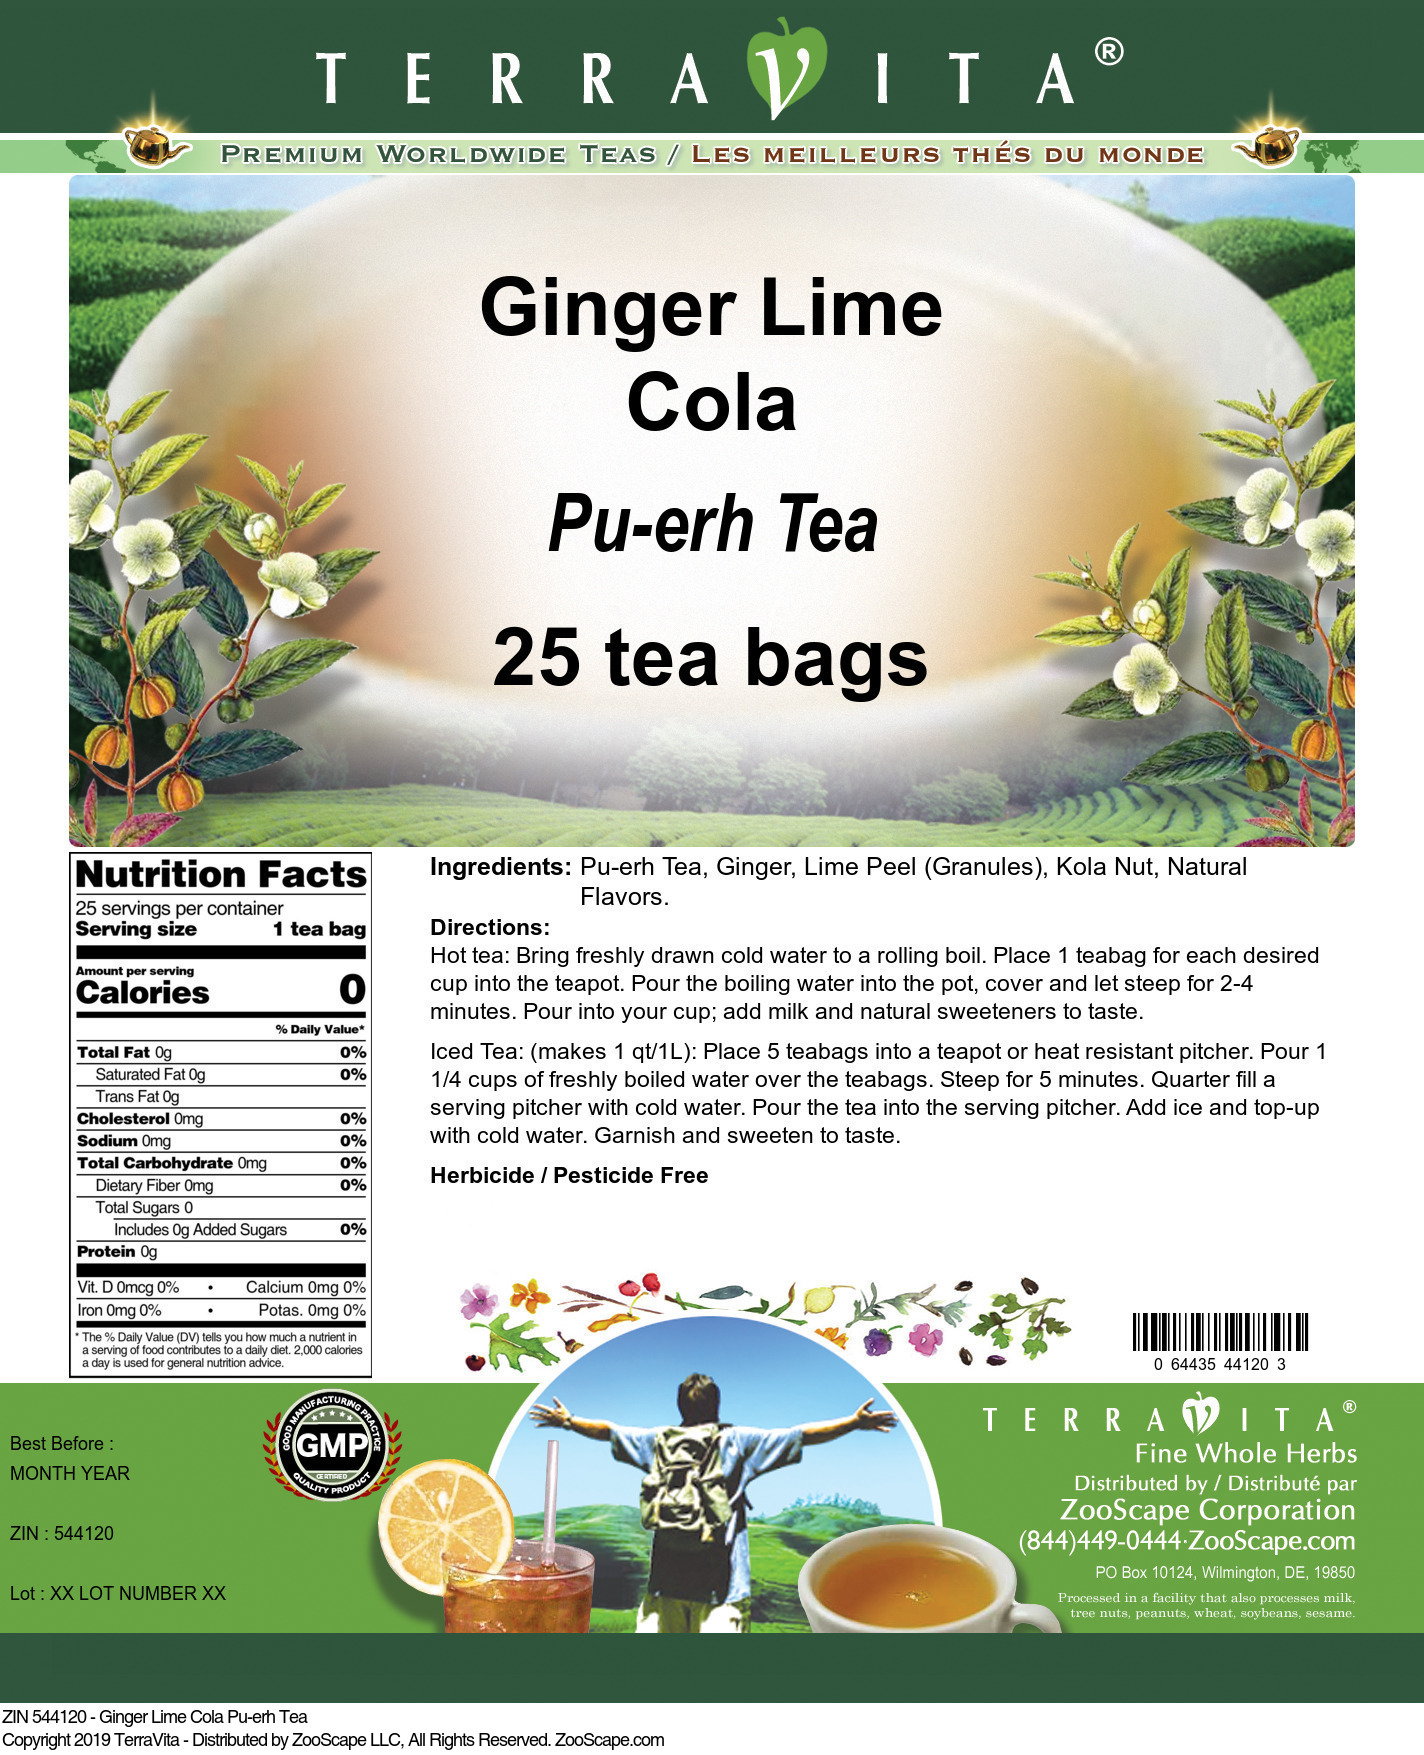 Ginger Lime Cola Pu-erh Tea - Label